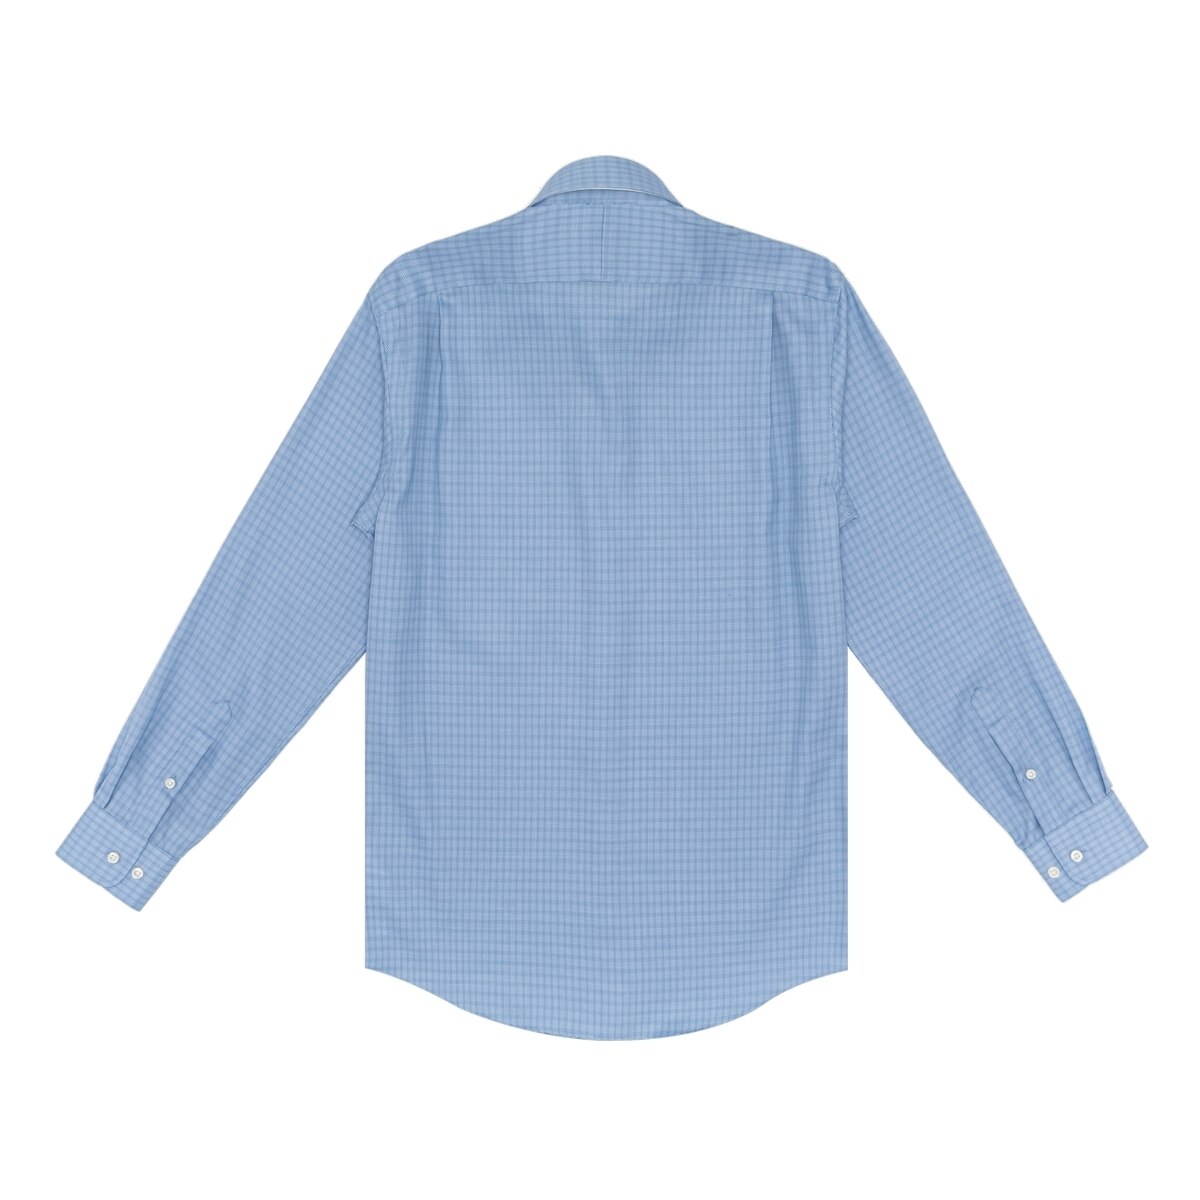 Kirkland Signature 科克蘭 男長袖鈕扣領印花襯衫 藍色格紋 領圍 15.5吋 X 袖長 32/33吋